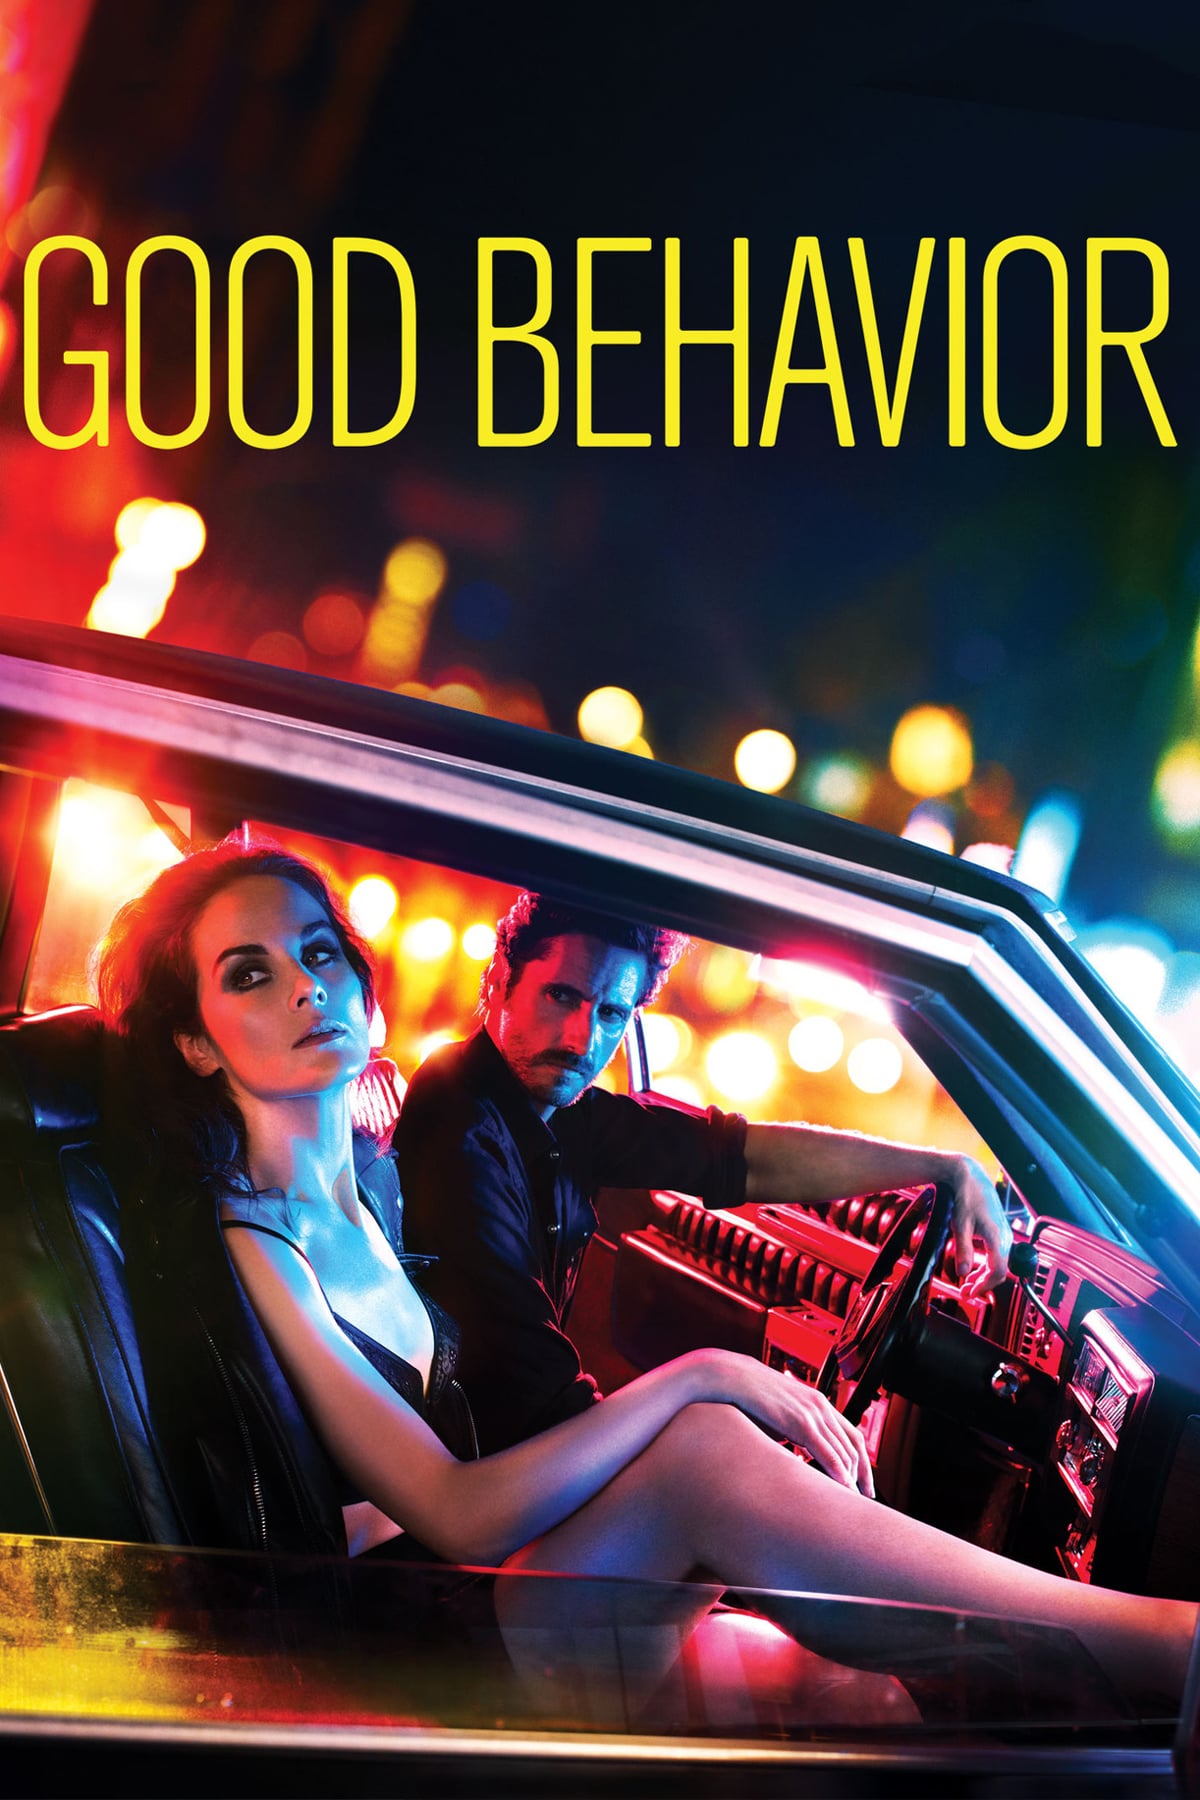 Plakát dobrého chování